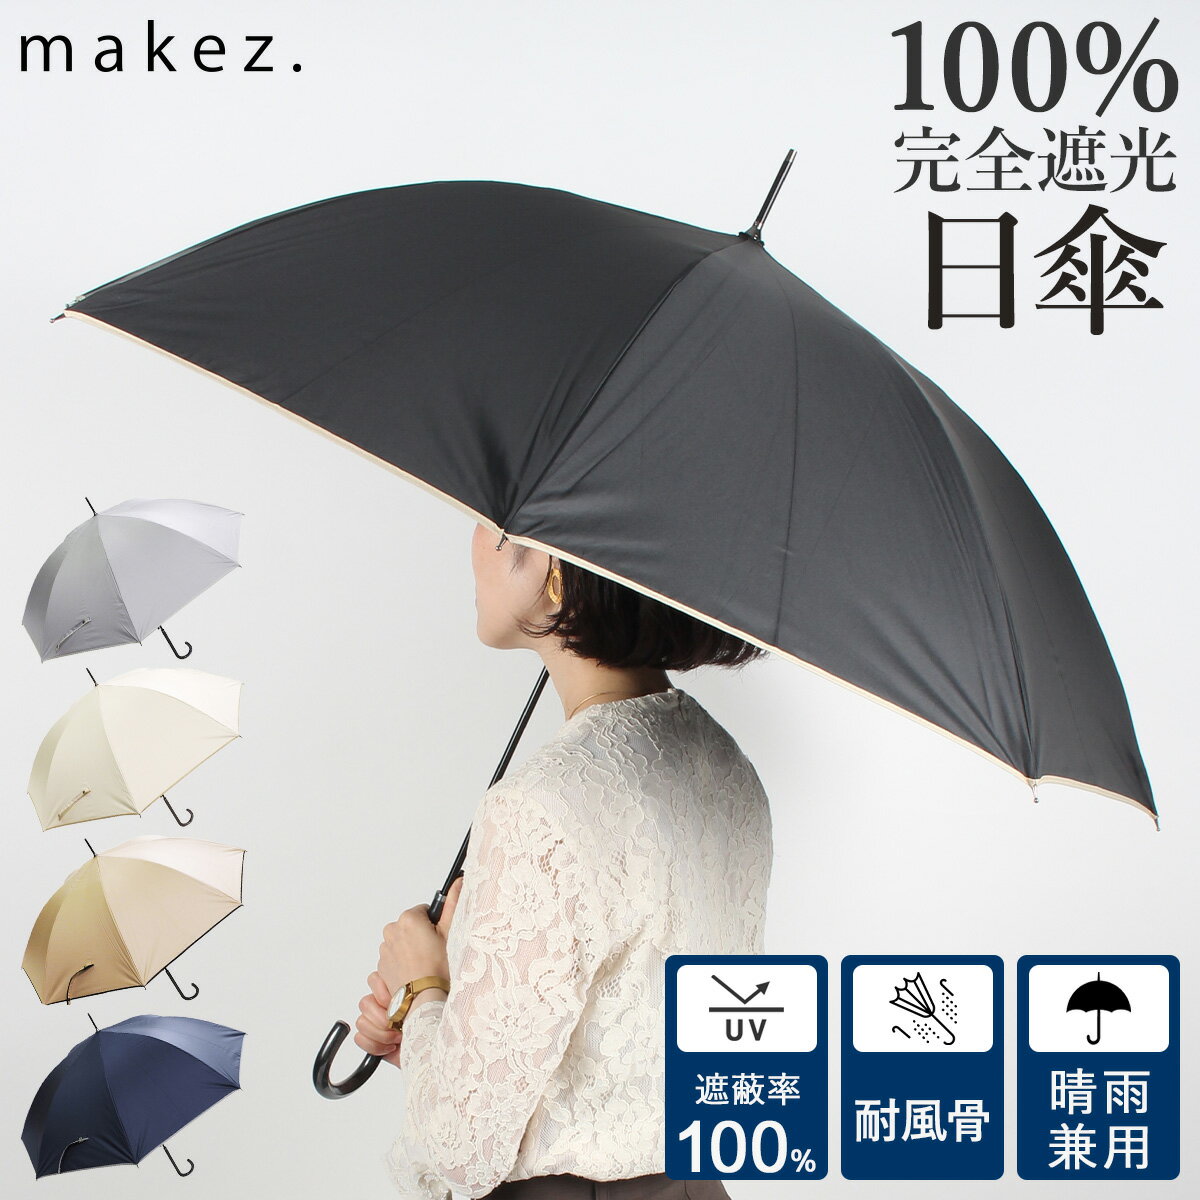 日傘 軽量 完全遮光 みんな探してる人気モノ 日傘 軽量 完全遮光 バッグ 小物 ブランド雑貨